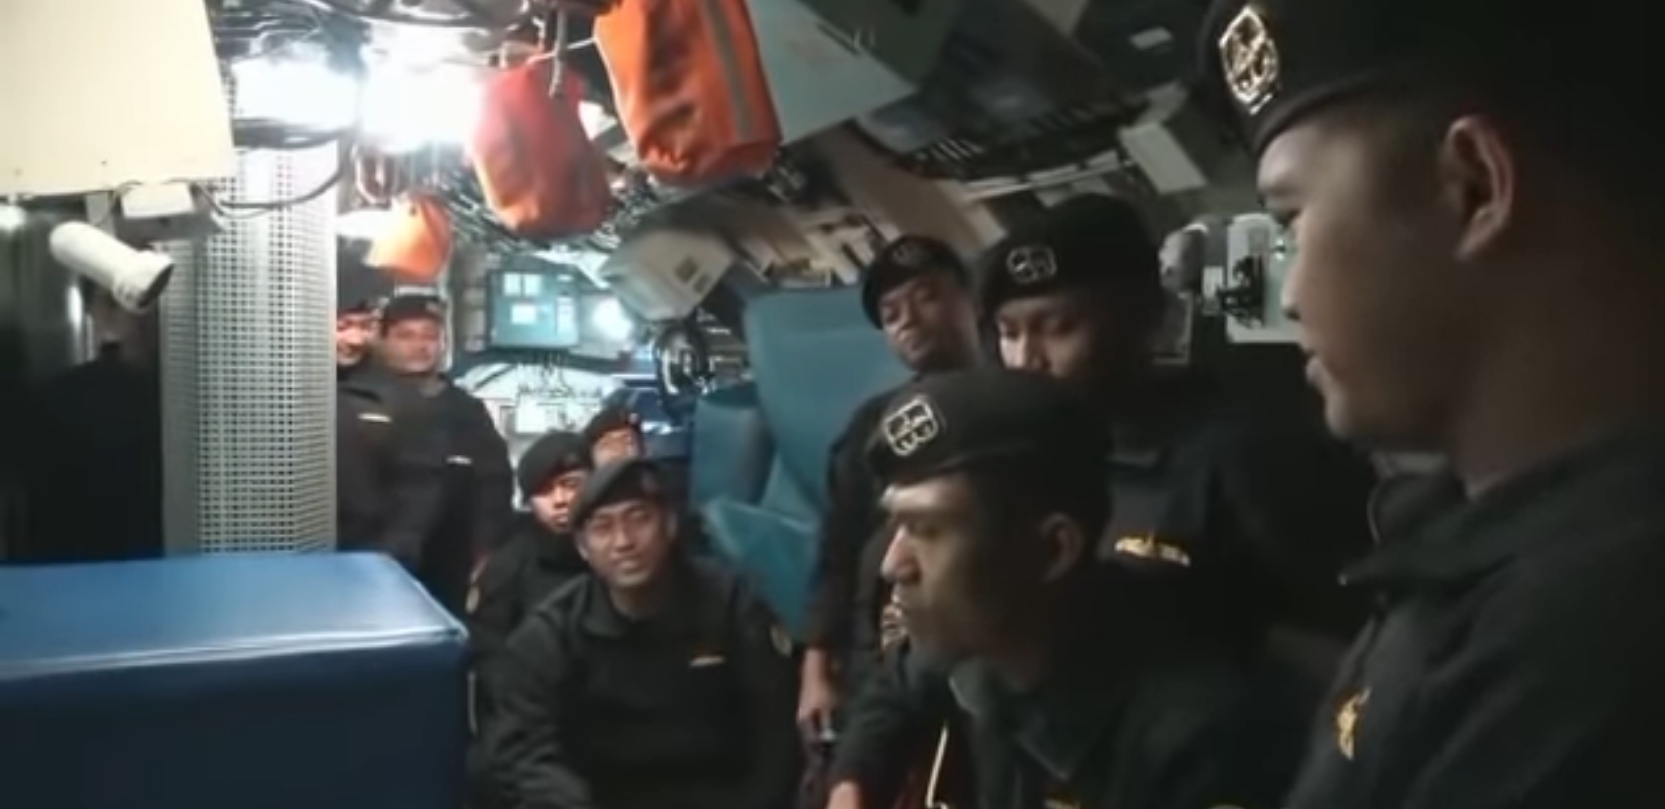 Ulltimo video dell'equipaggio del sottomarino indonesiano, cantavano canzone "Ci vediamo dopo".